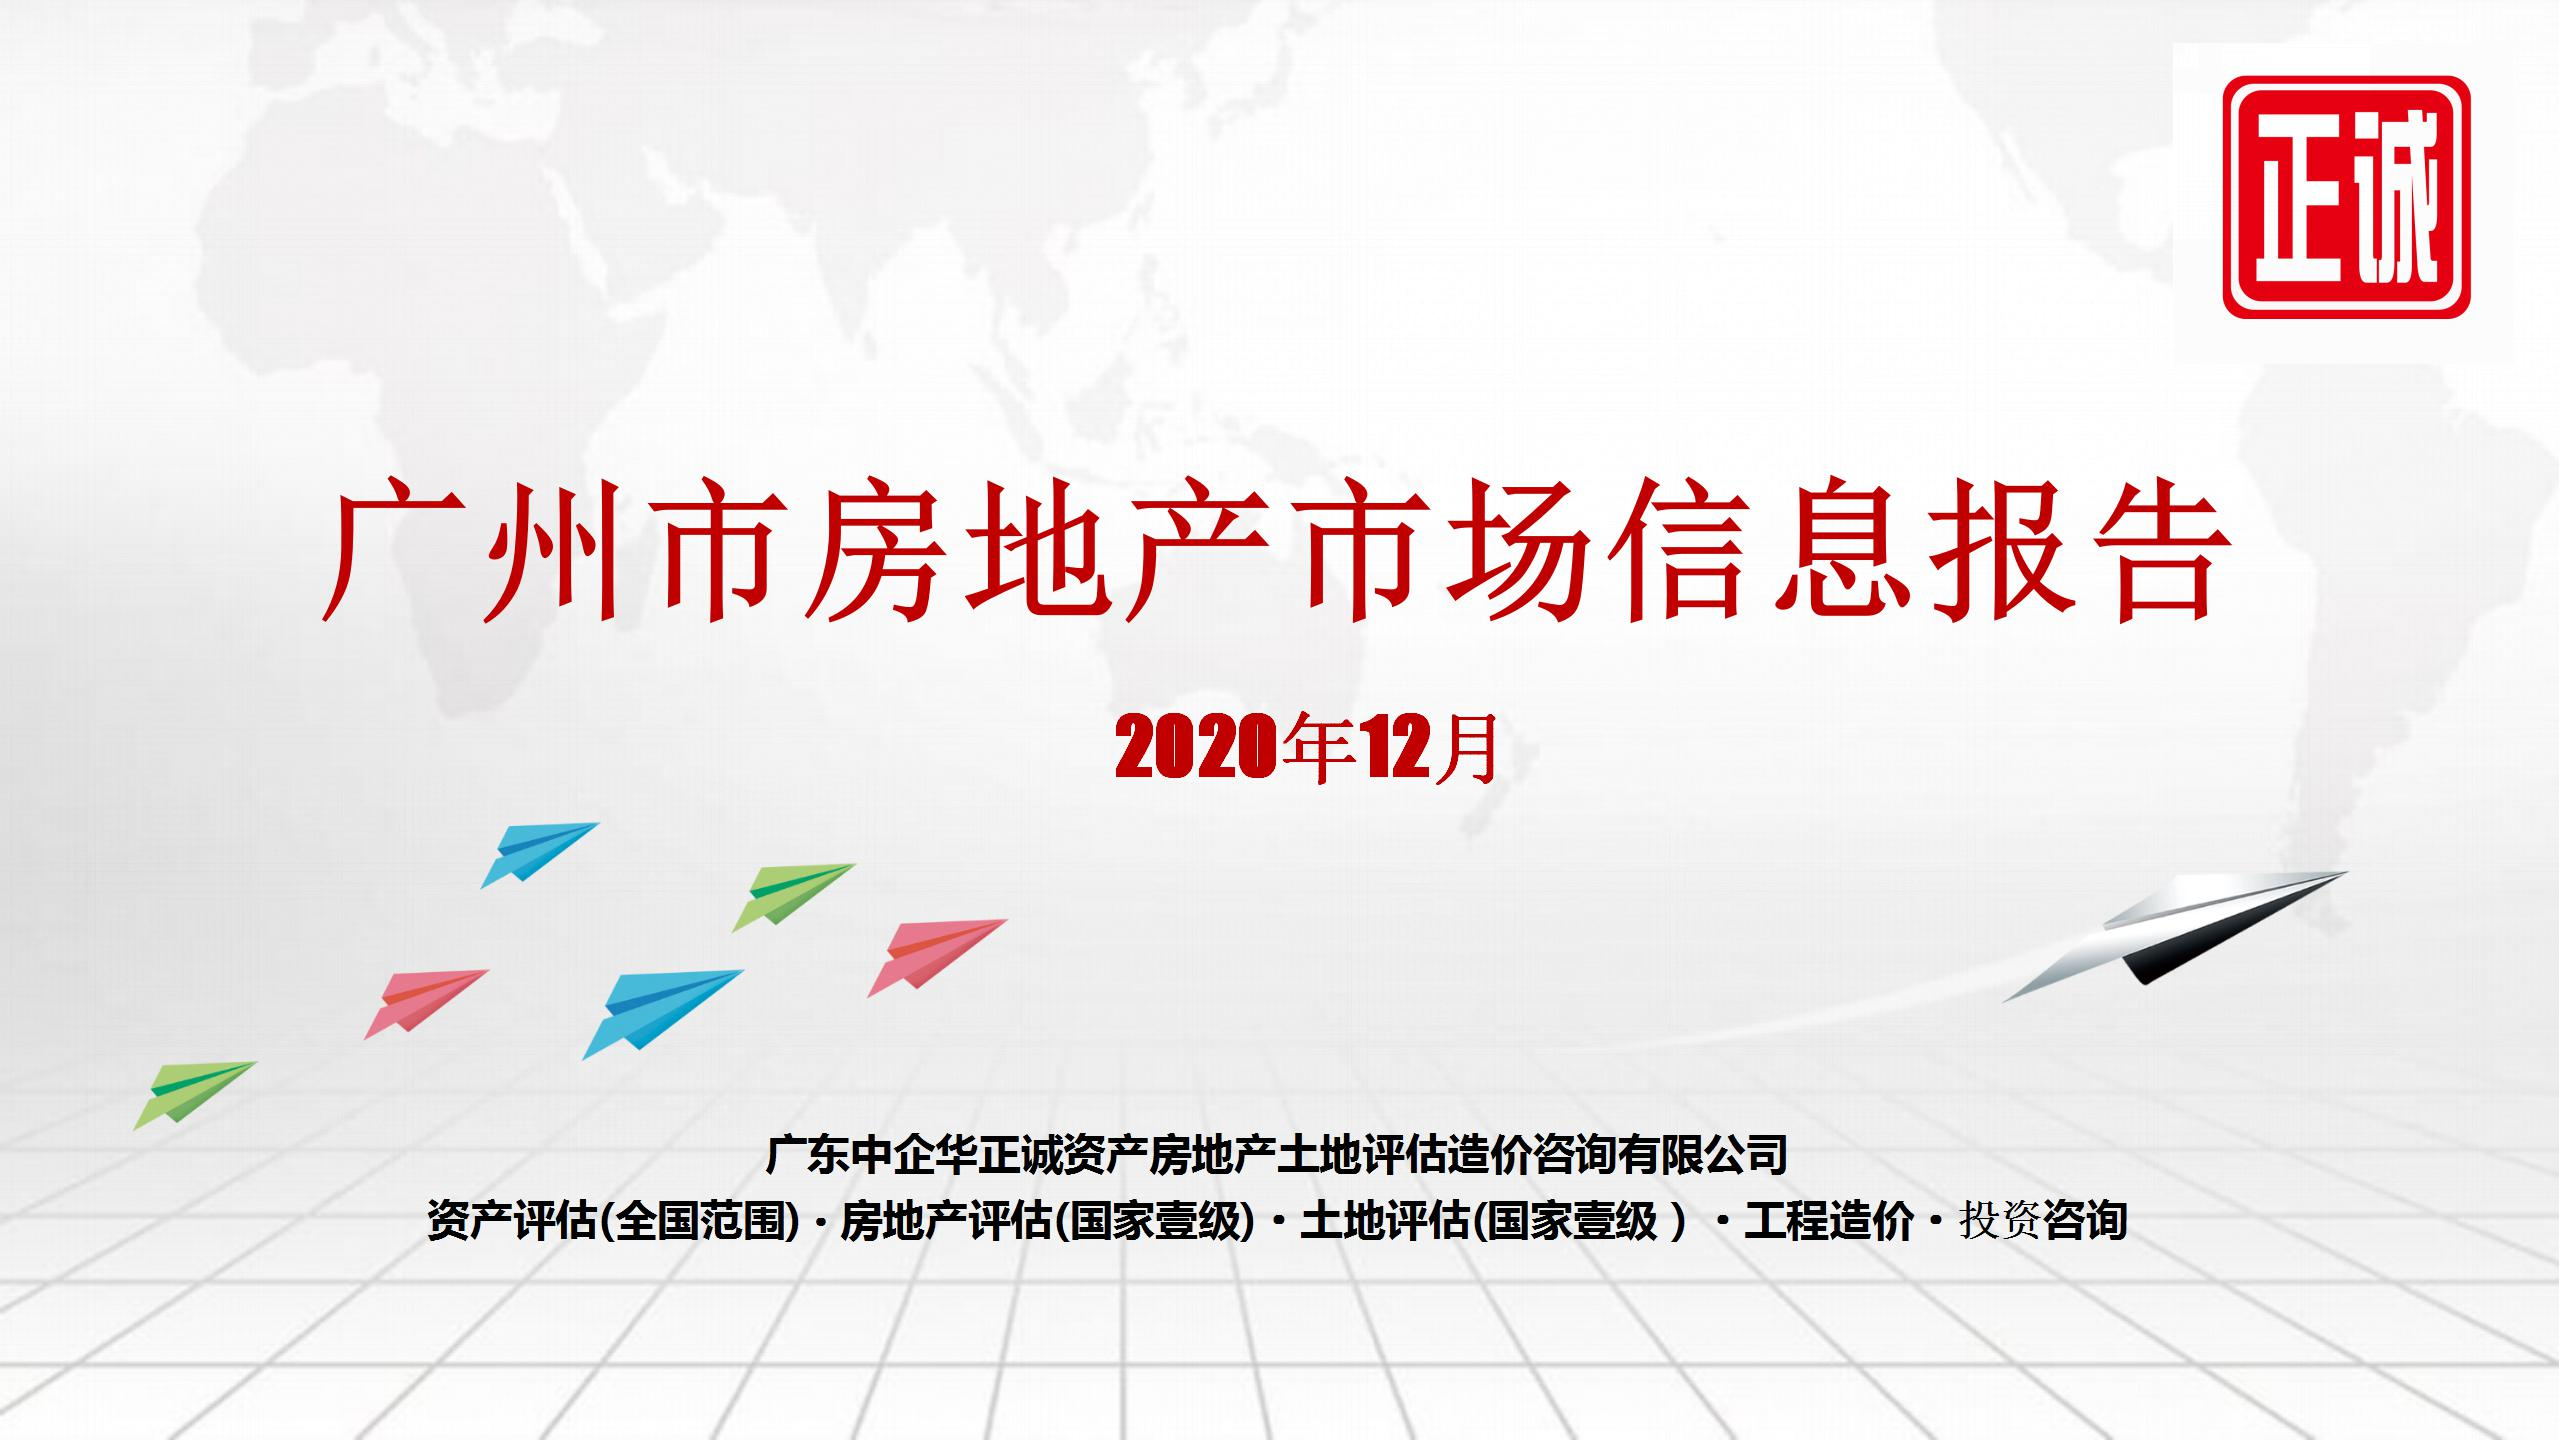 2020年12月广州市房地产市场信息报告